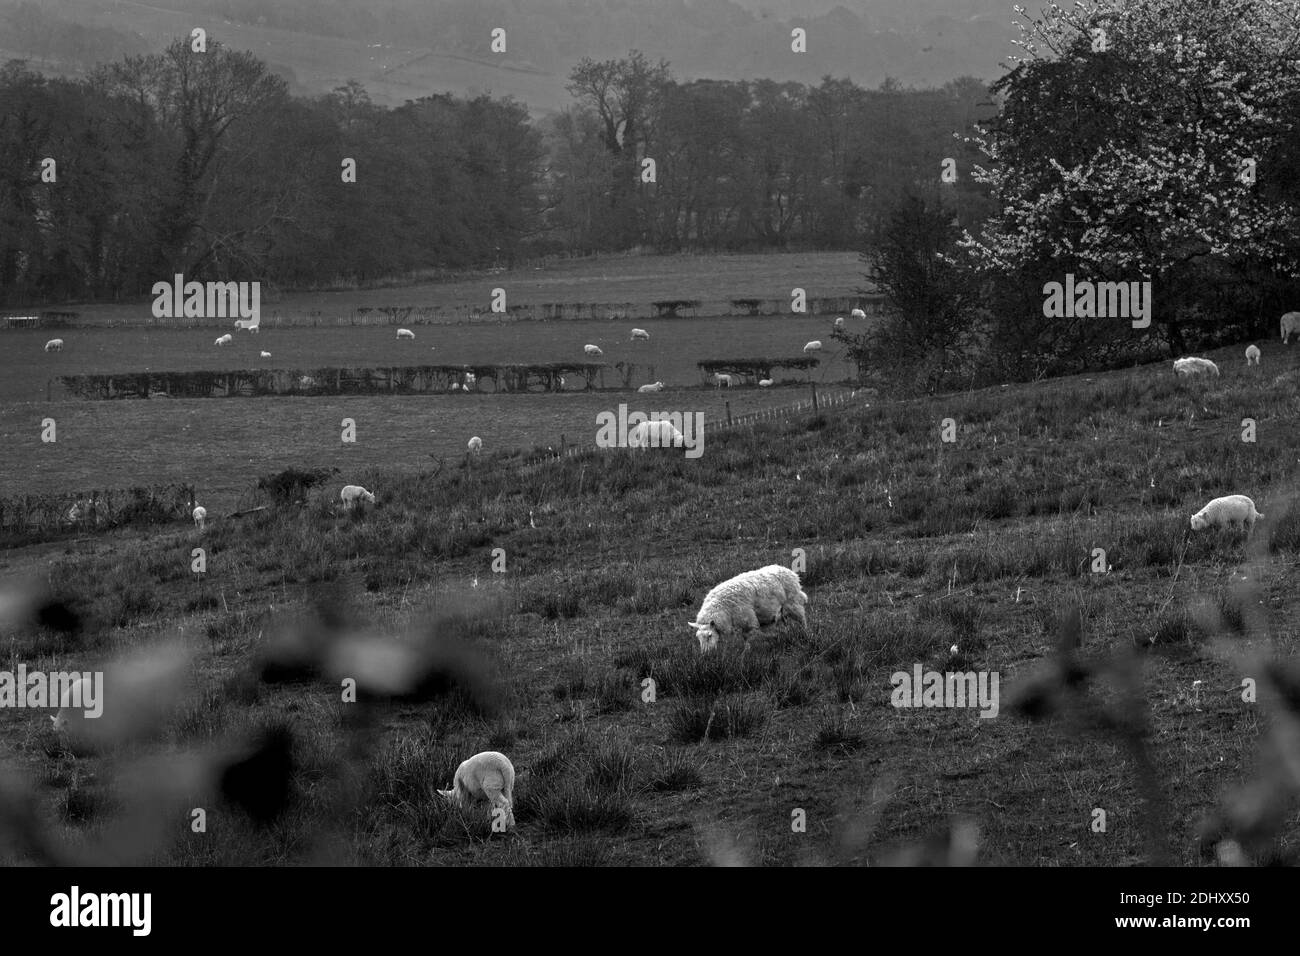 Des moutons se broutent sur des pâturages dans la région des montagnes noires du parc national de Brecon Beacons à Monbucshire, au sud-est du pays de Galles Banque D'Images